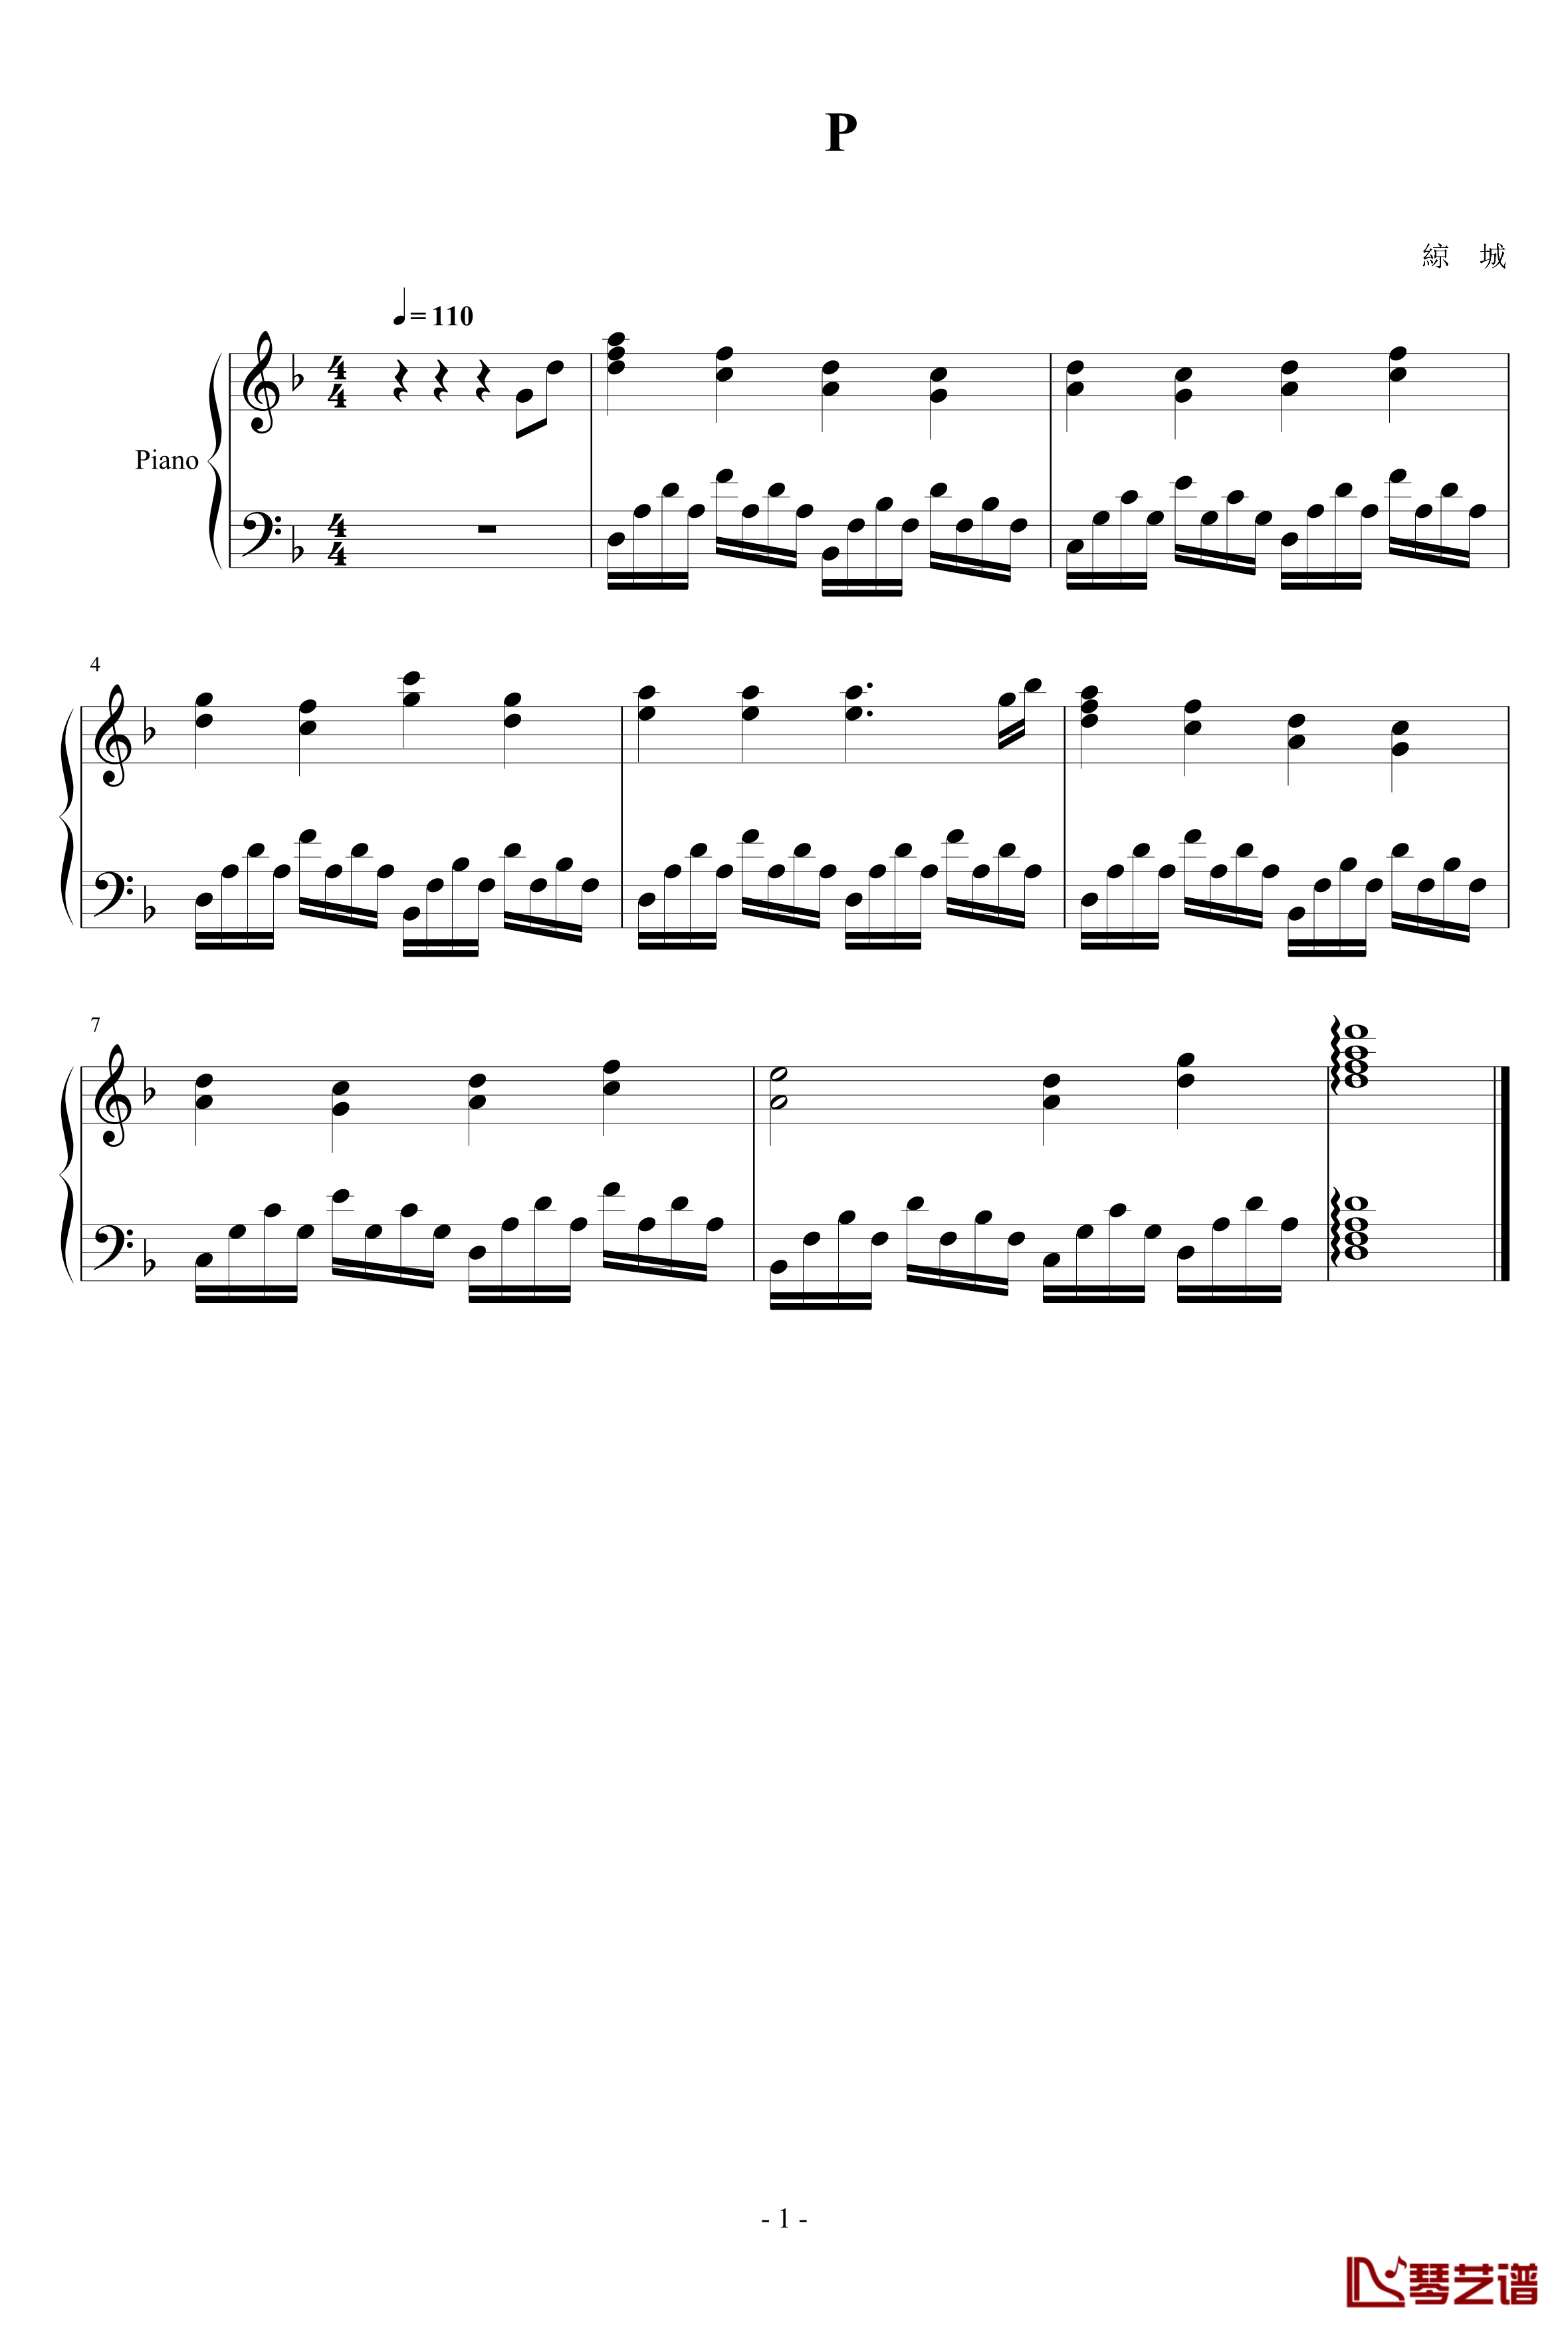 一頁曲钢琴谱-278901461